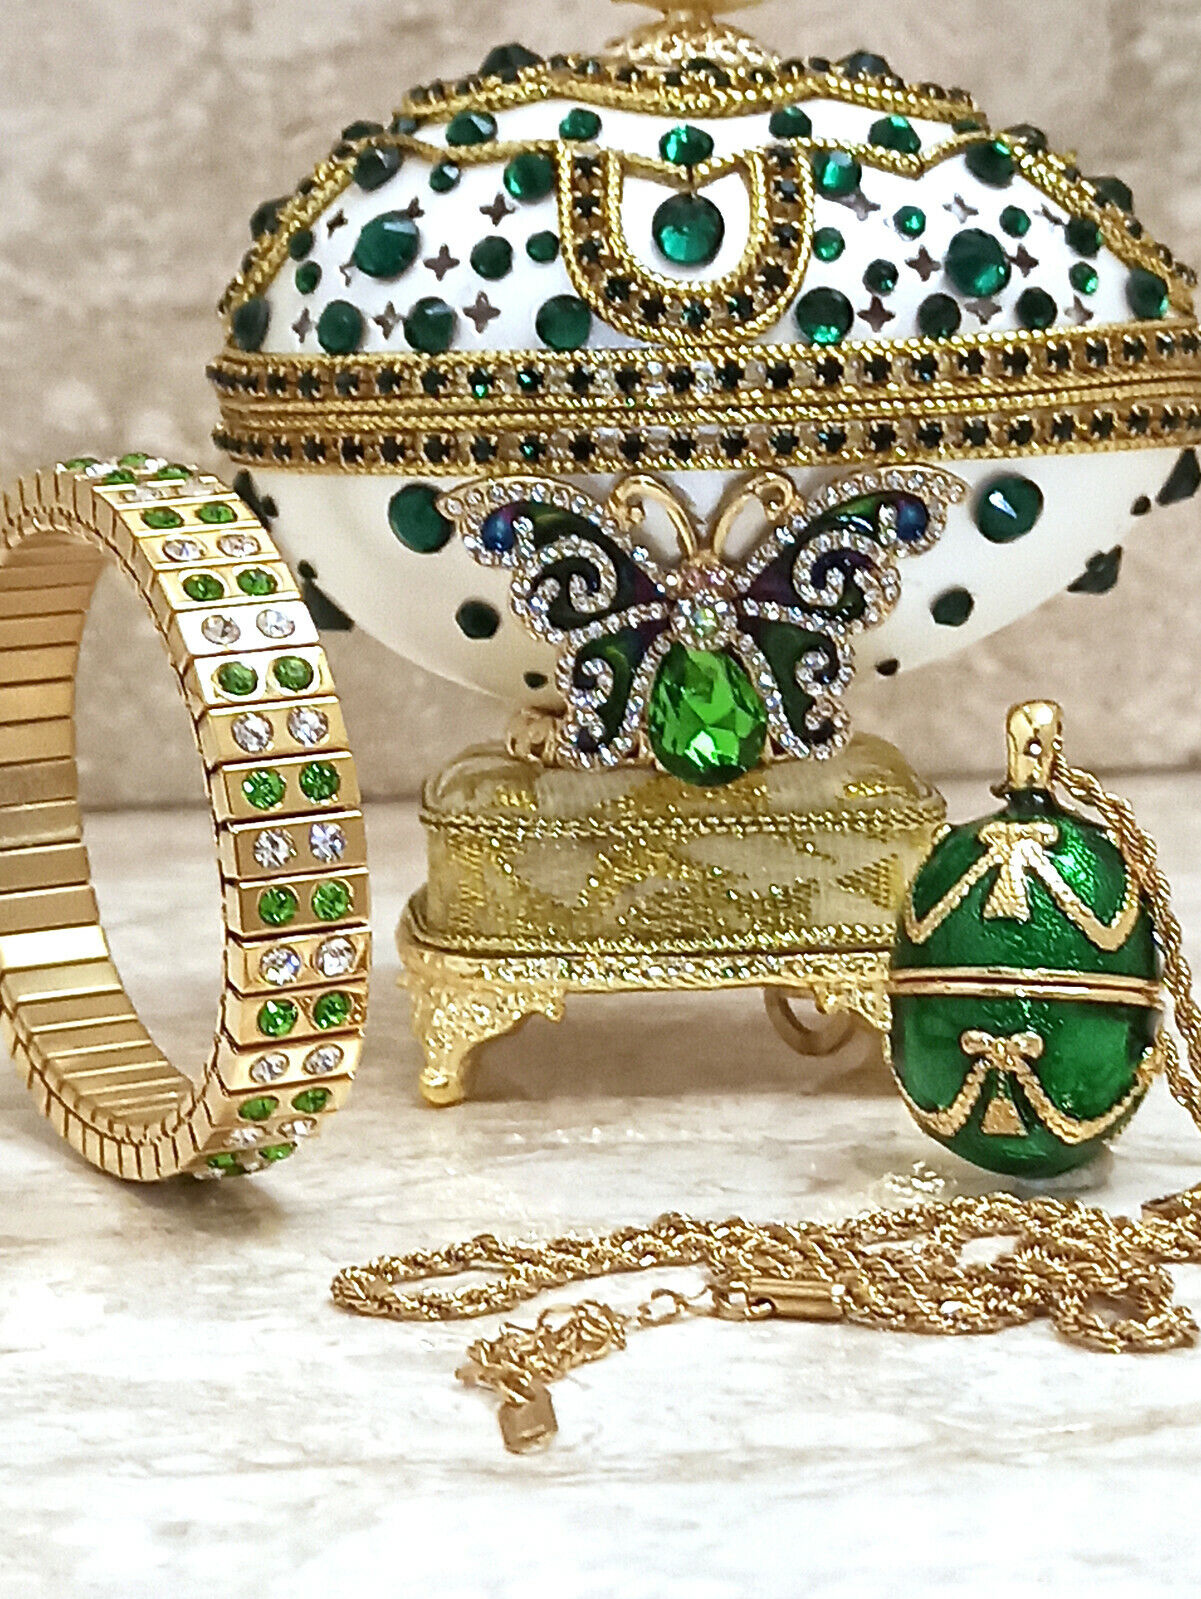 Emerald Faberge egg trinket box + Faberge egg necklace + 2ct Bracelet 24k GOLD